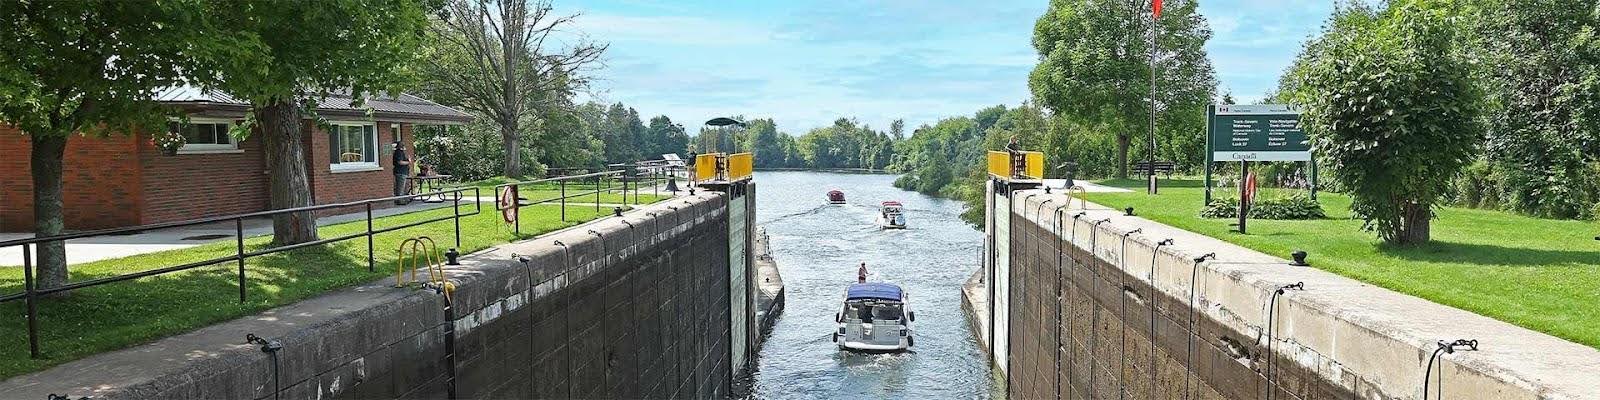 Trent Severn Waterway Locks